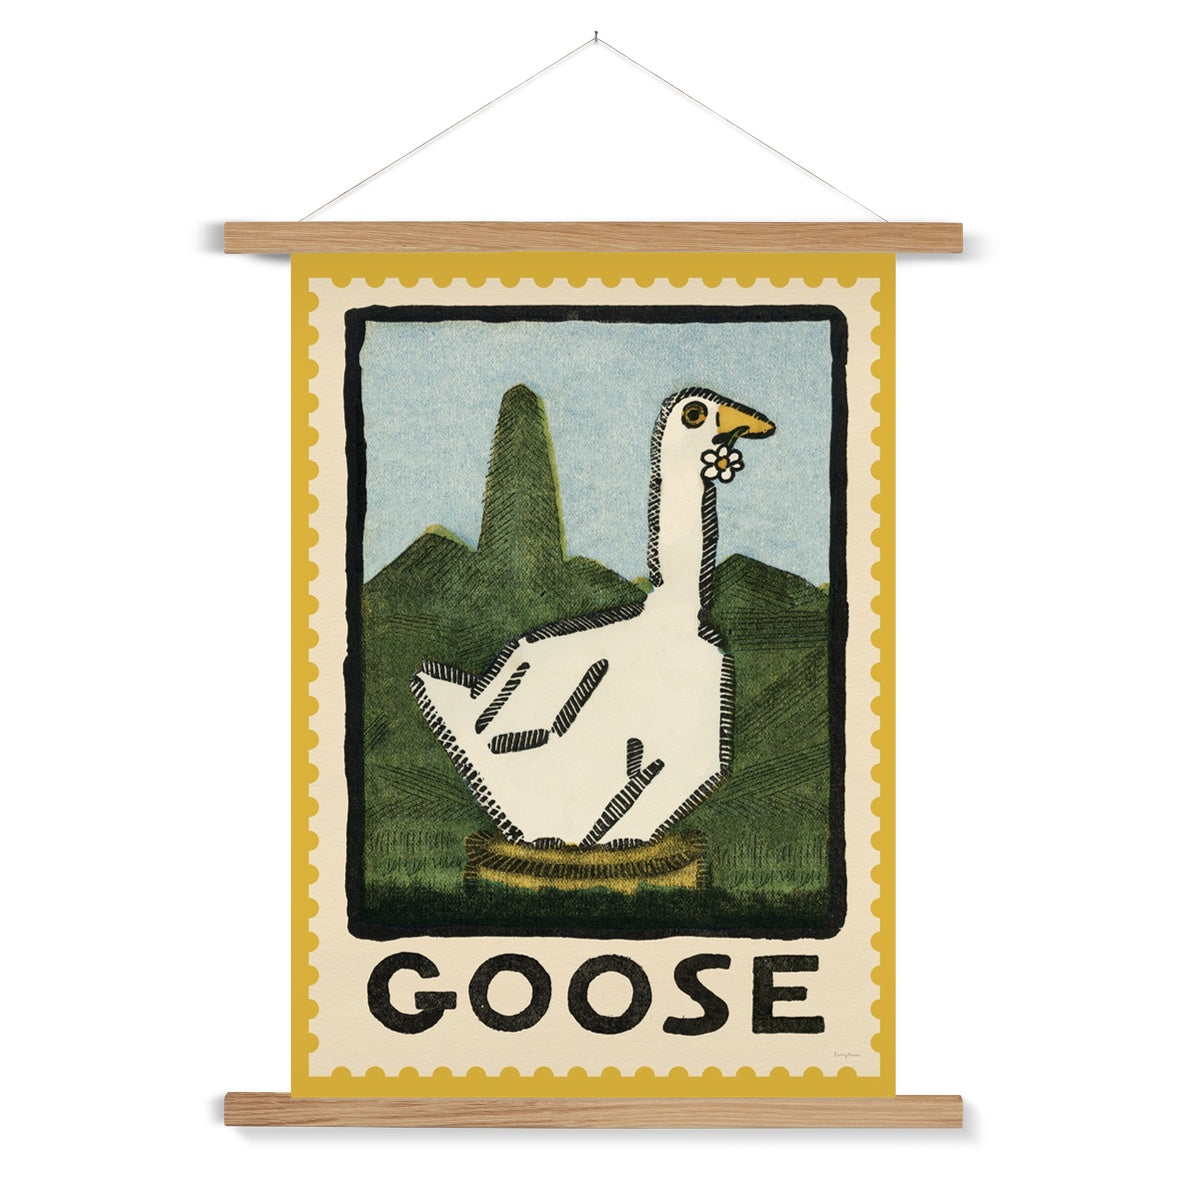 Goose Vintage Postage Stamp Fine Art Print with Hanger